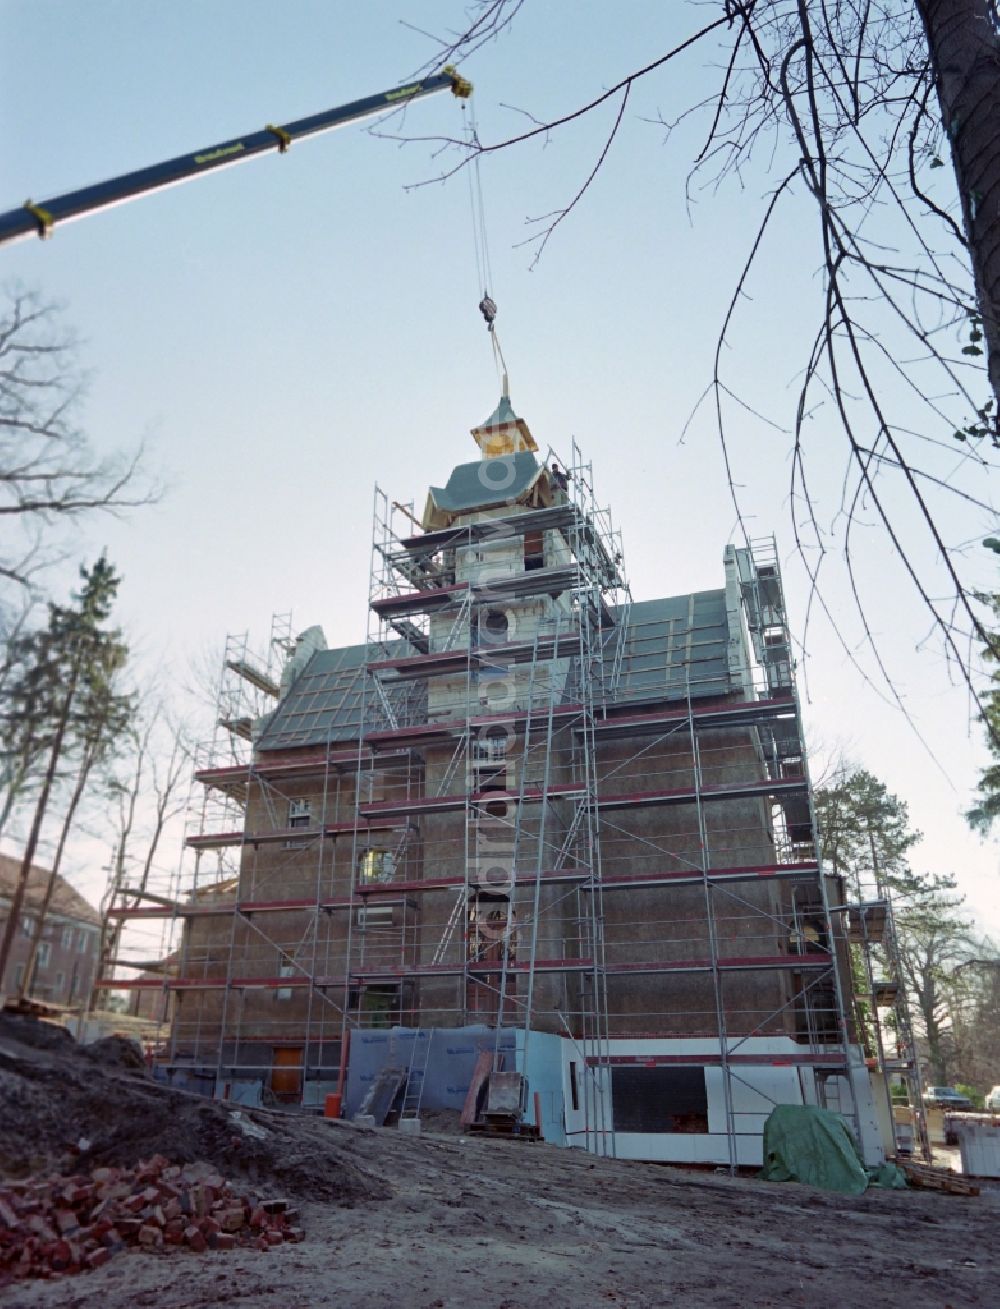 DDR-Bildarchiv: Potsdam - Umbau und Sanierung einer Villa in der Spitzweggasse im Ortsteil Babelsberg in Potsdam in Brandenburg in der DDR